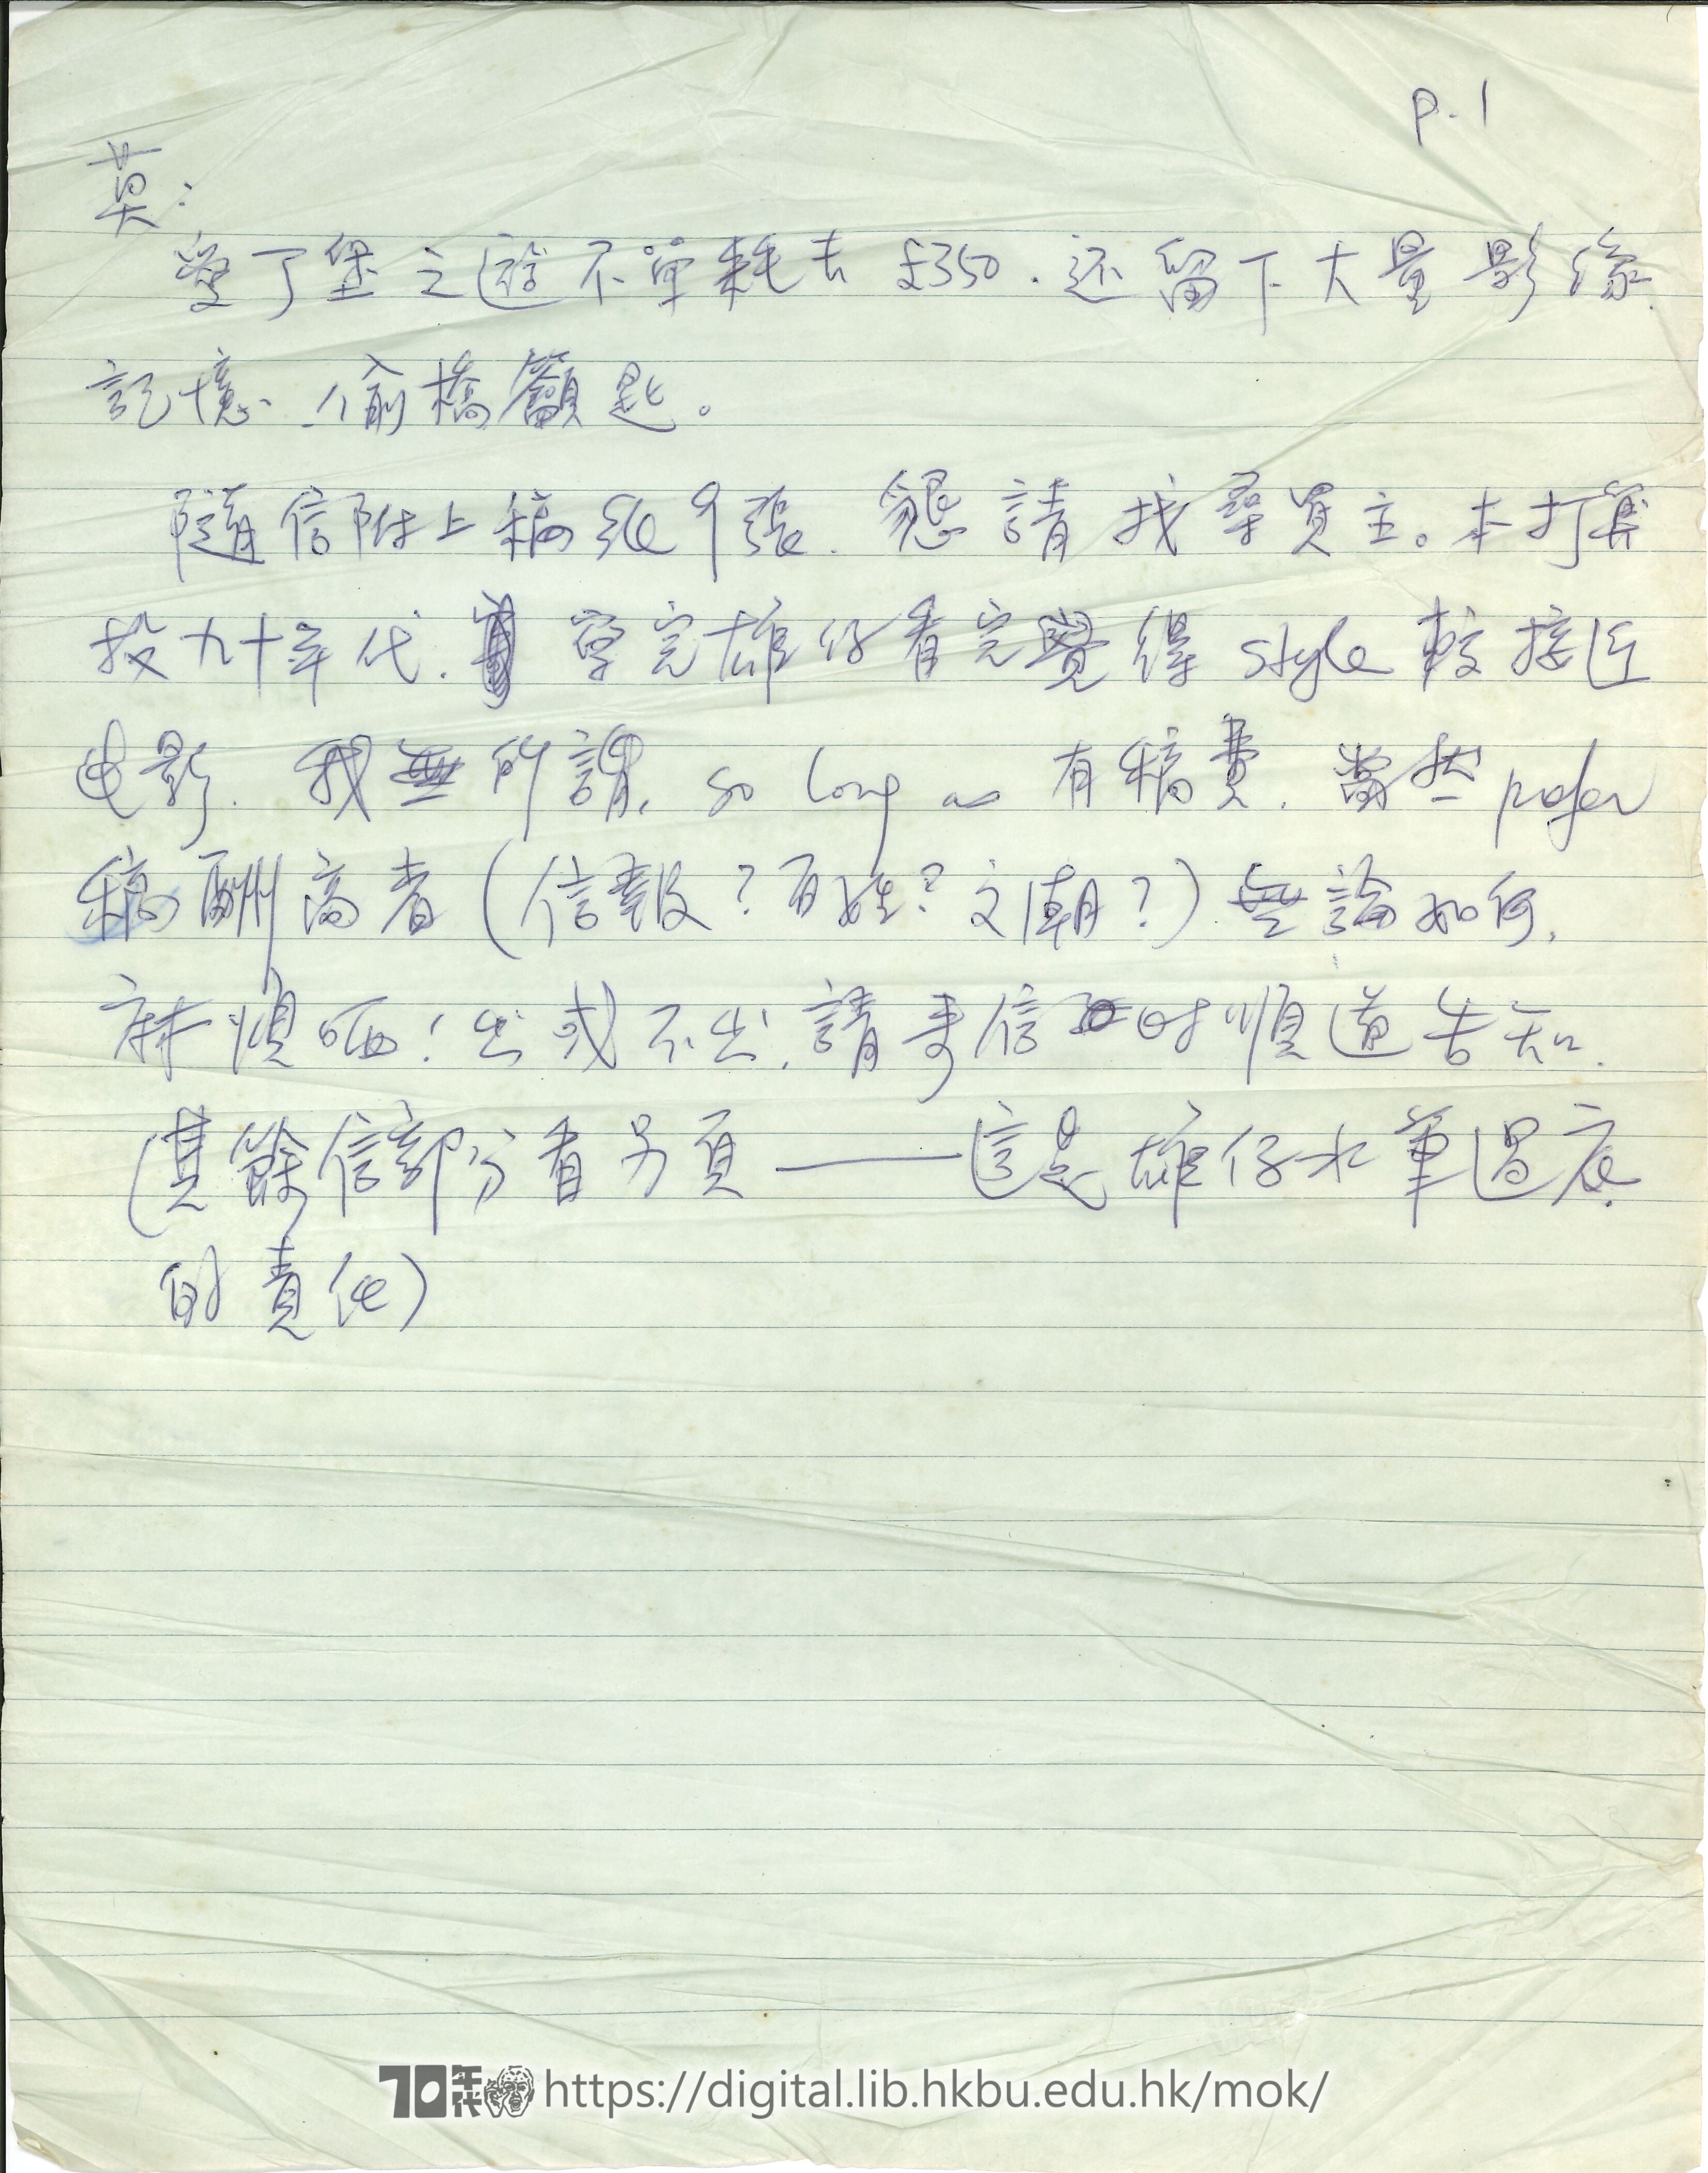   Letter from Yuen Chi-hung to Mok Chiu Yu 雄仔 